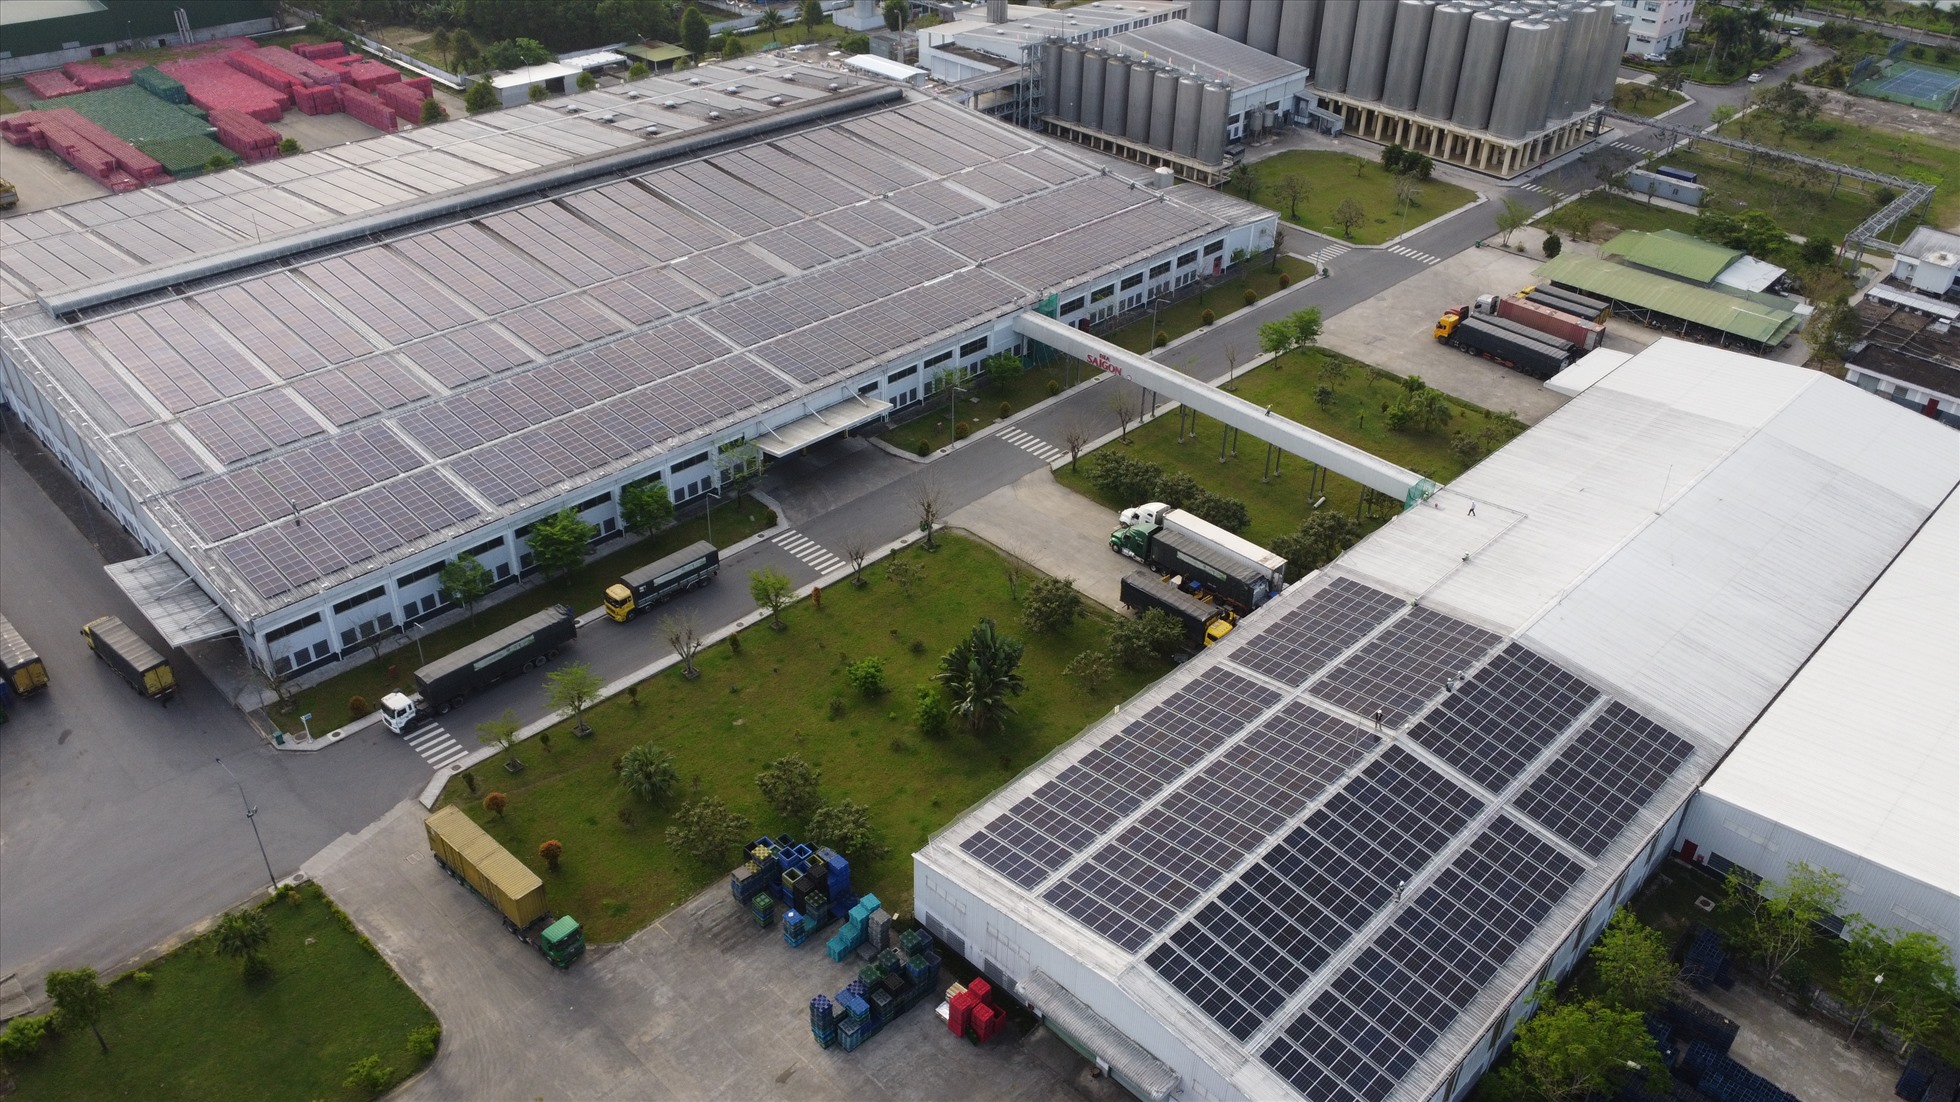 4. Hệ thống điện năng lượng mặt trời mái nhà tại nhà máy Bia Sài Gòn Quảng Ngãi được lắp đặt từ giai đoạn 1